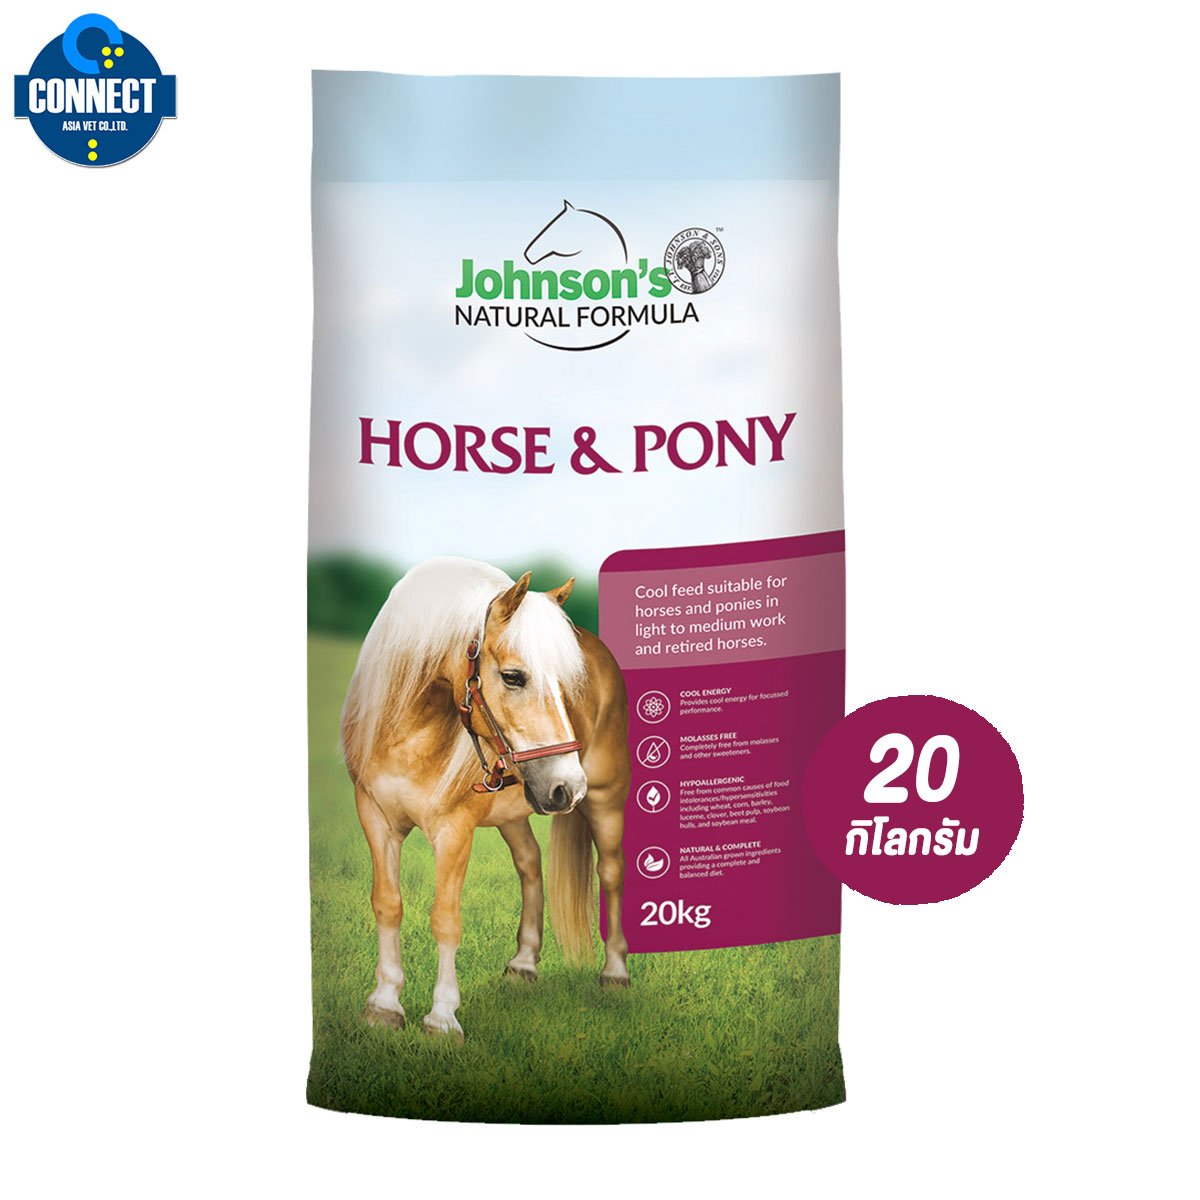 อาหารม้า - Johnson’s Horse & Pony 20 Kg. สูตรทั้วไป เป็นอาหารเม็ดที่มีเยื่อใยอาหารสูง สำหรับม้าทุกสายพันธุ์ 20 KG.